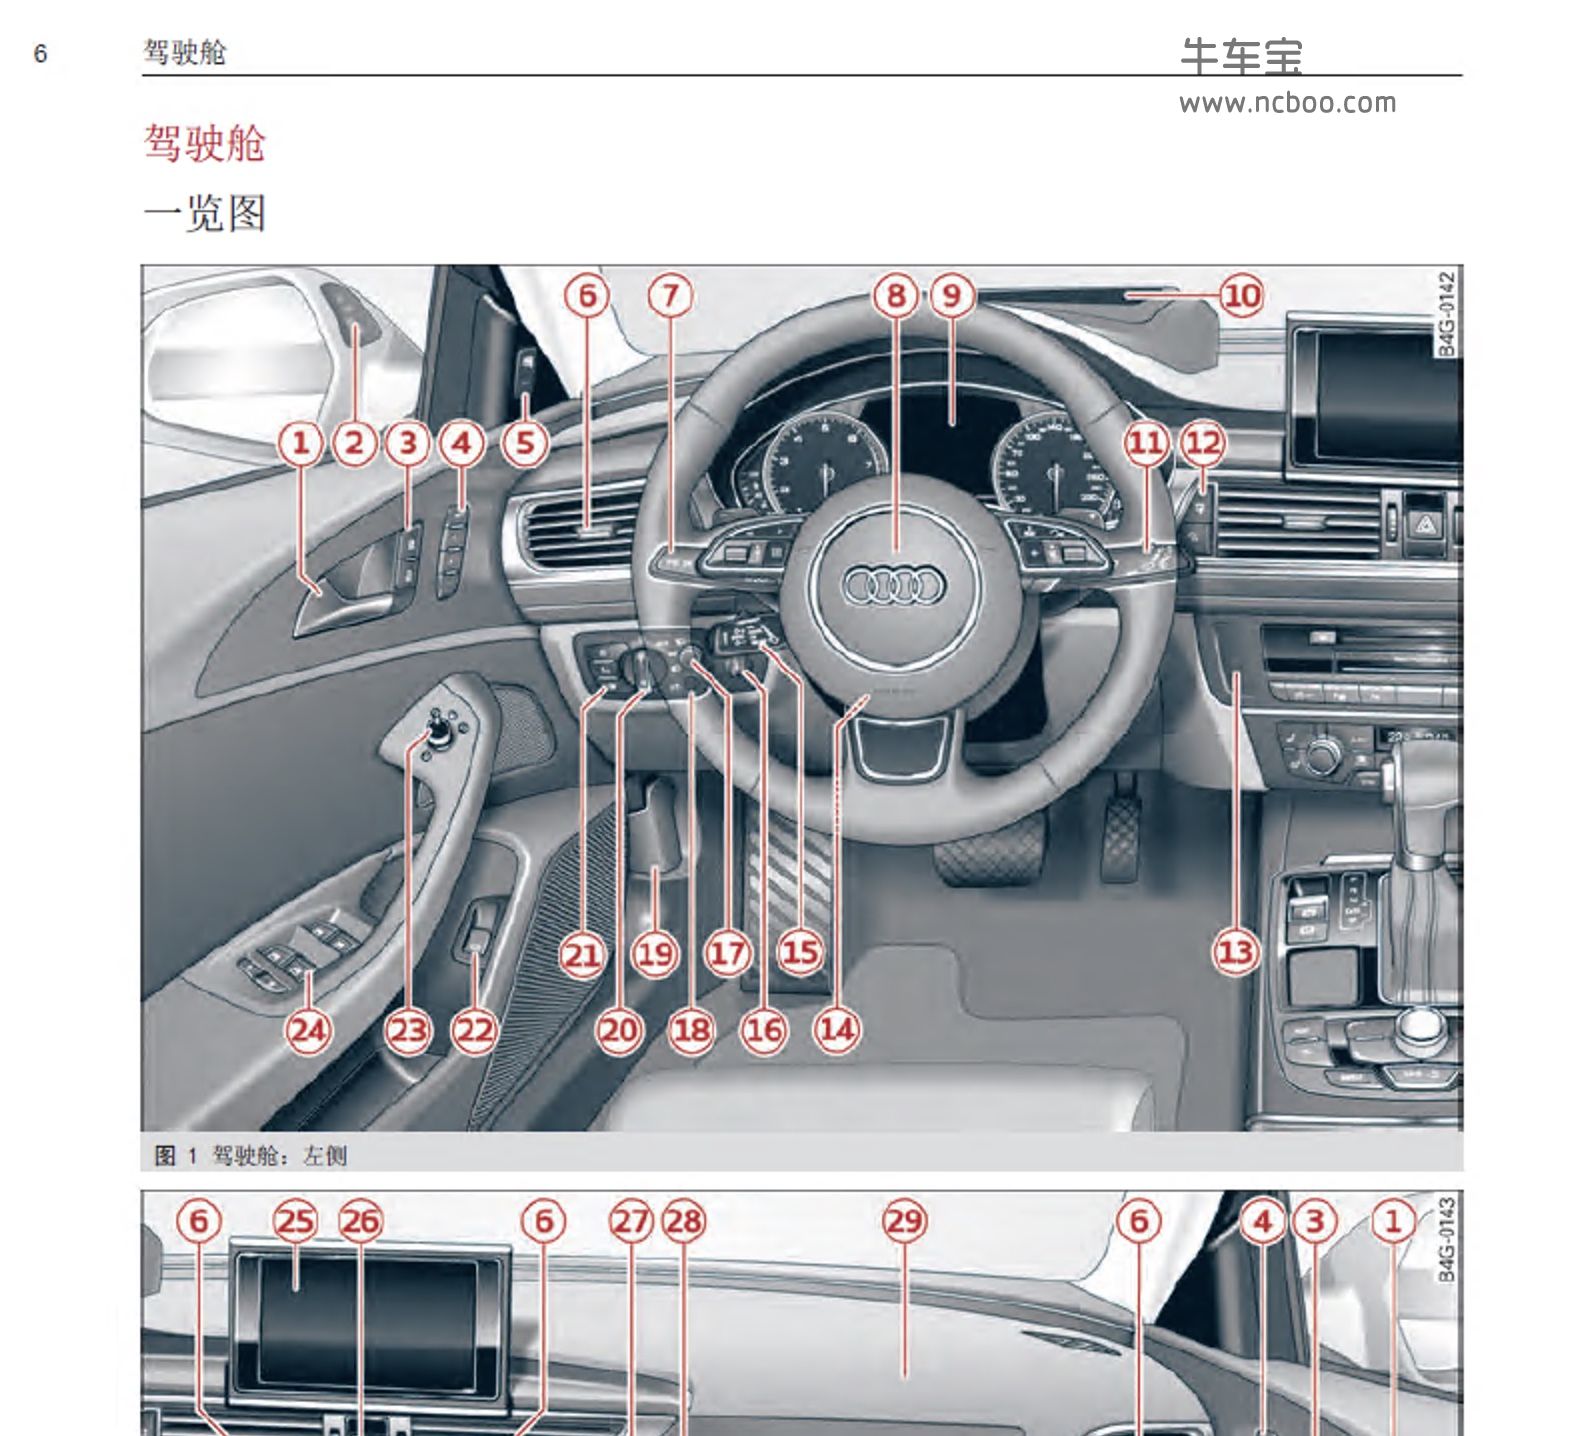 2013款奥迪A6/S6产品使用说明书pdf电子版下载